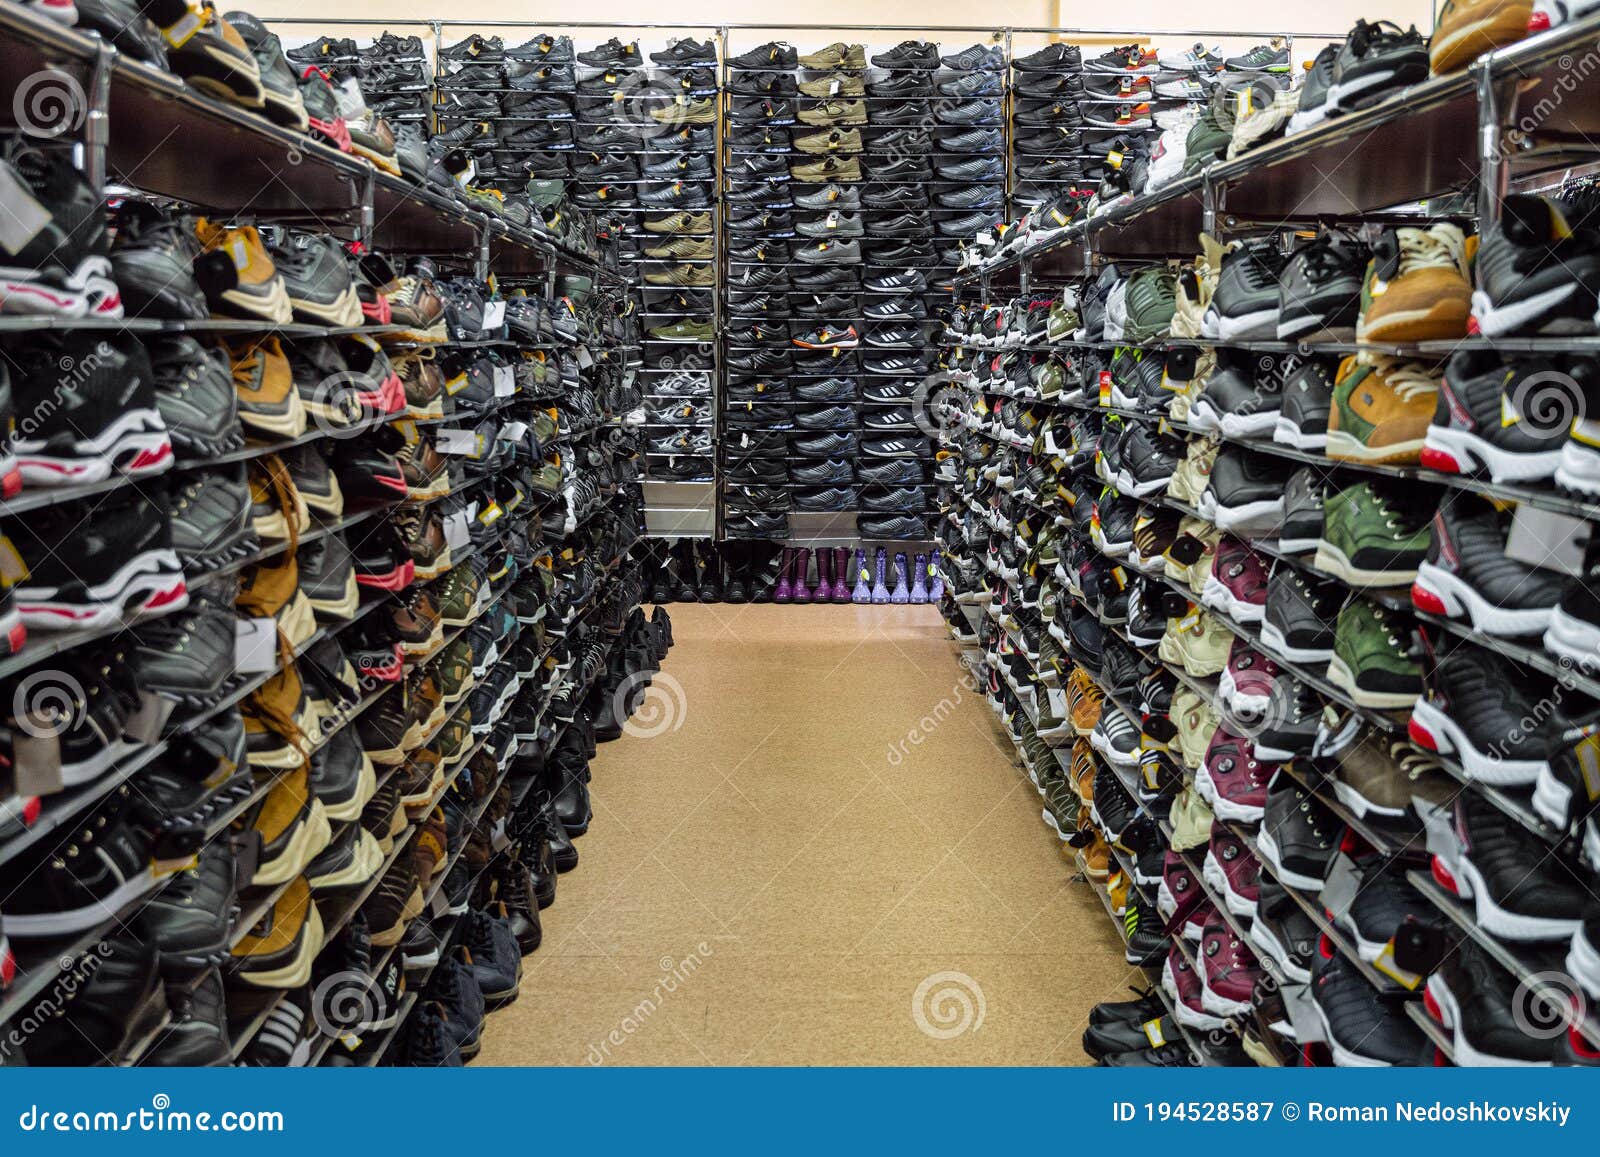 Filas De Compras En La De Zapatos. De Varios Pisos Con Filas De Zapatillas De Hombre. editorial - Imagen de zapato, mercado: 194528587